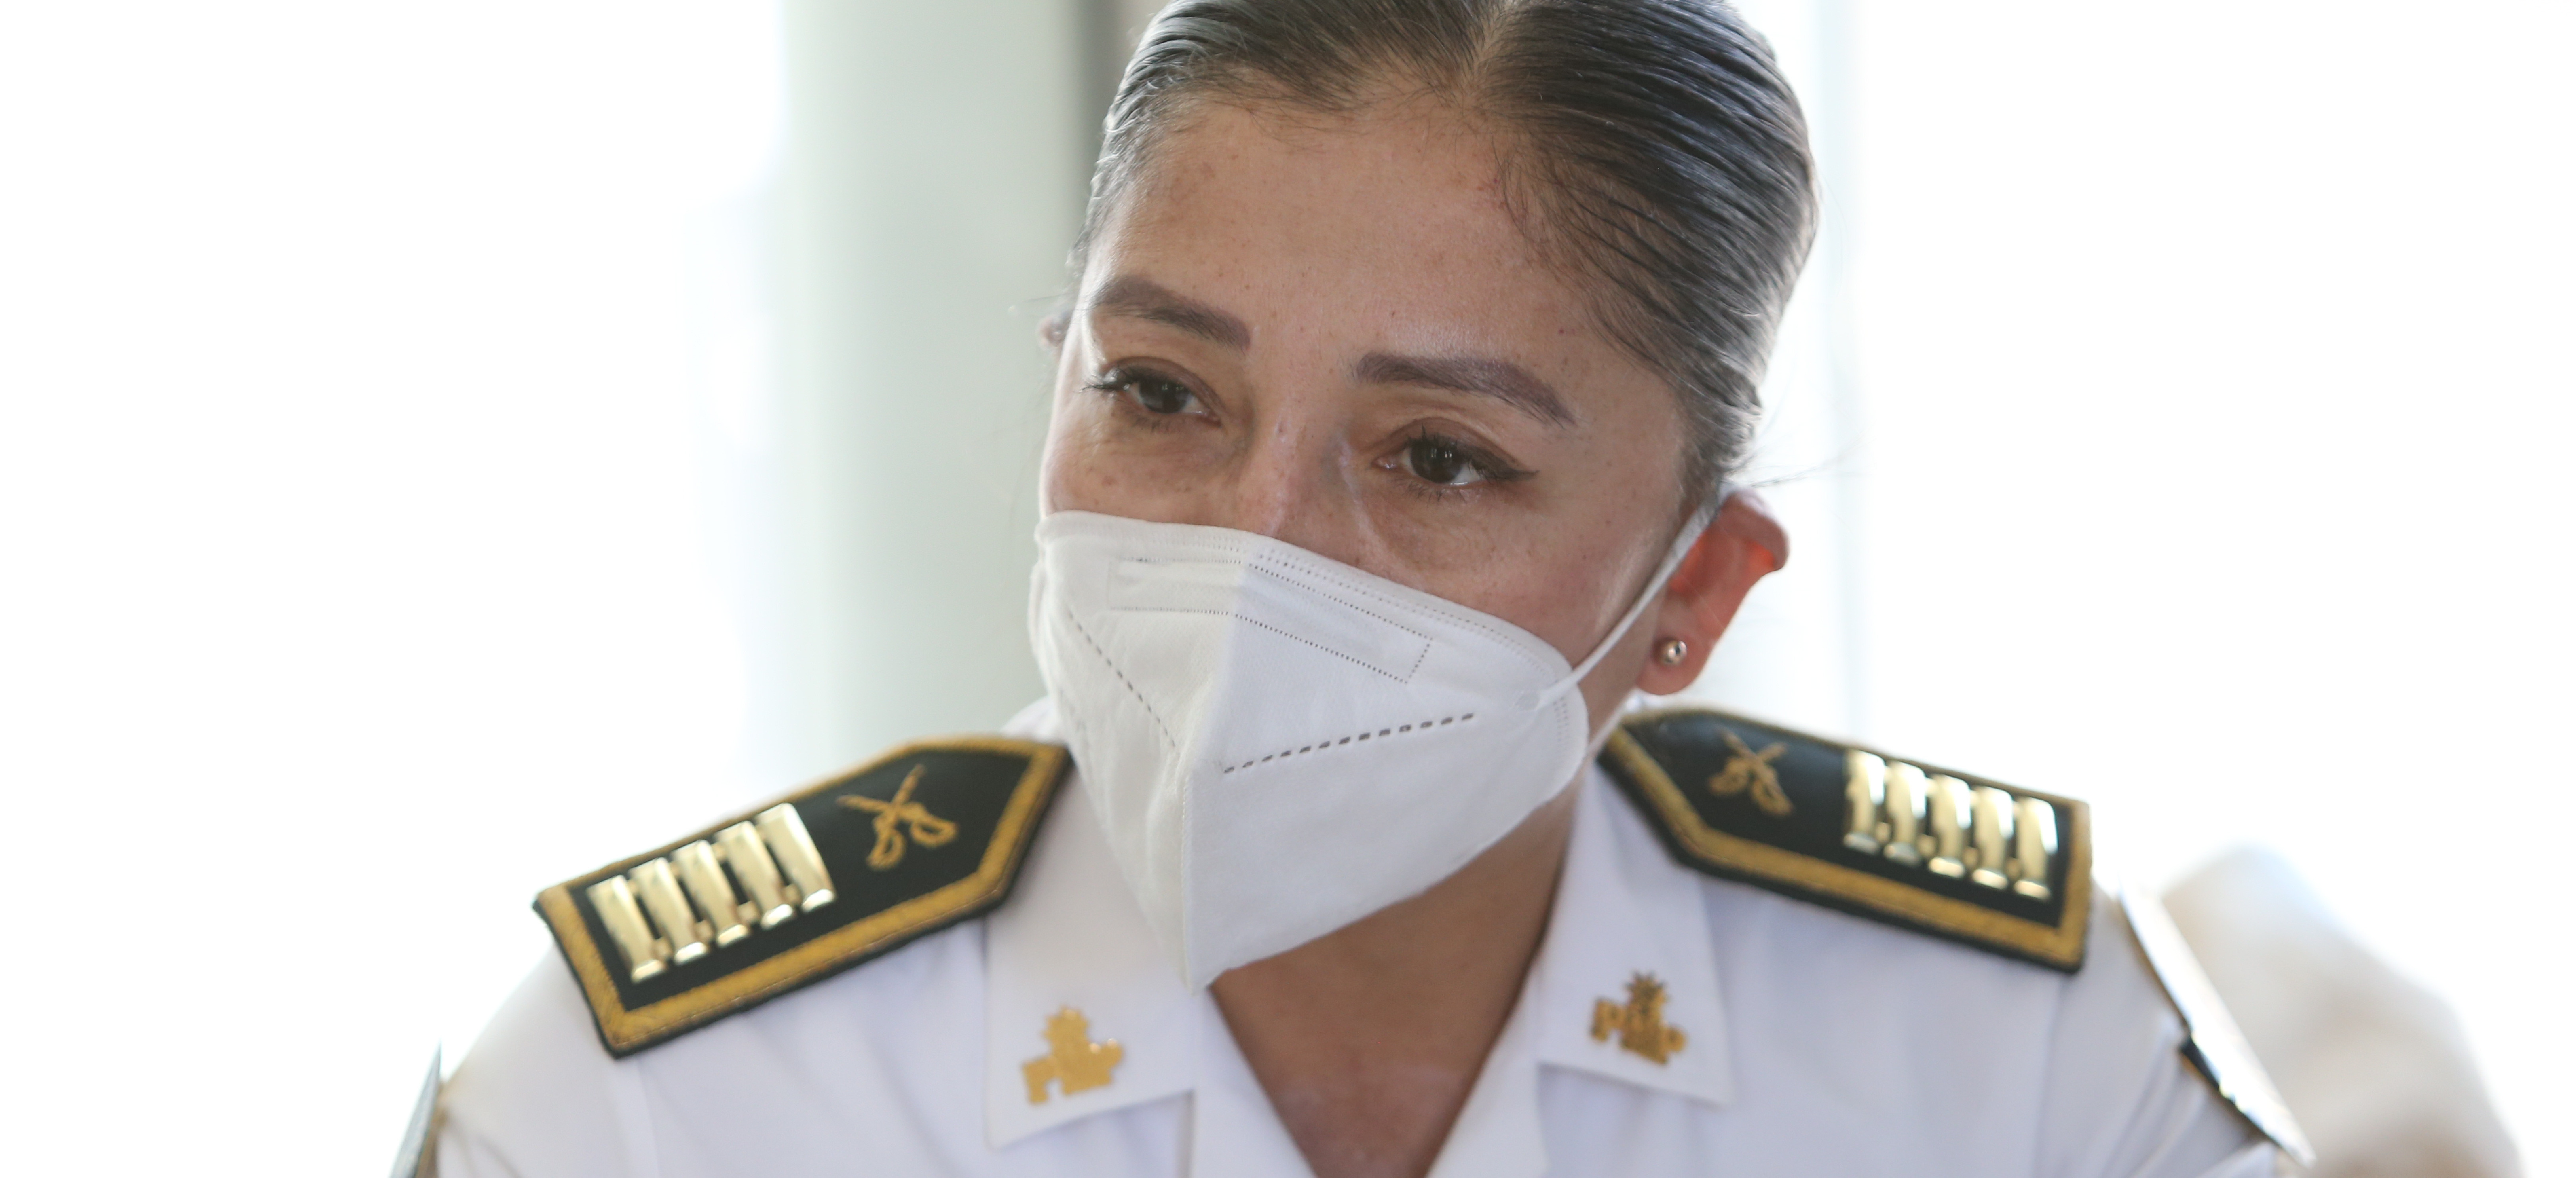 Astrid Salas, comandante PNP: PERUMIN 35 se realizó bajo estrictas normas de seguridad y en convivencia pacífica